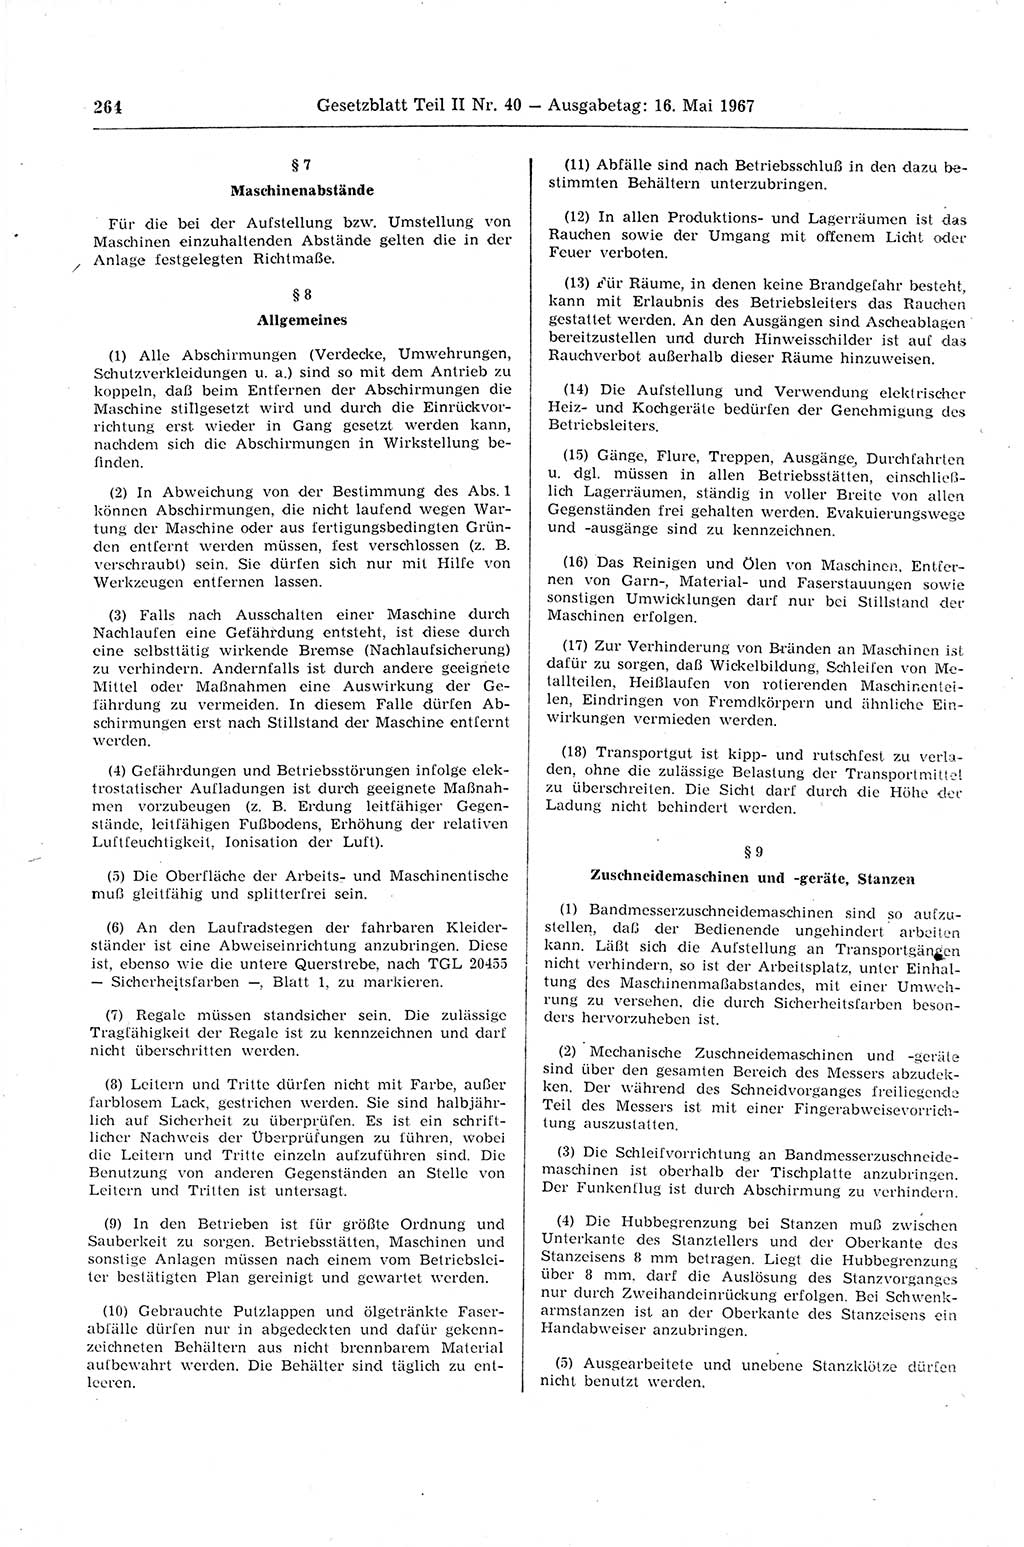 Gesetzblatt (GBl.) der Deutschen Demokratischen Republik (DDR) Teil ⅠⅠ 1967, Seite 264 (GBl. DDR ⅠⅠ 1967, S. 264)